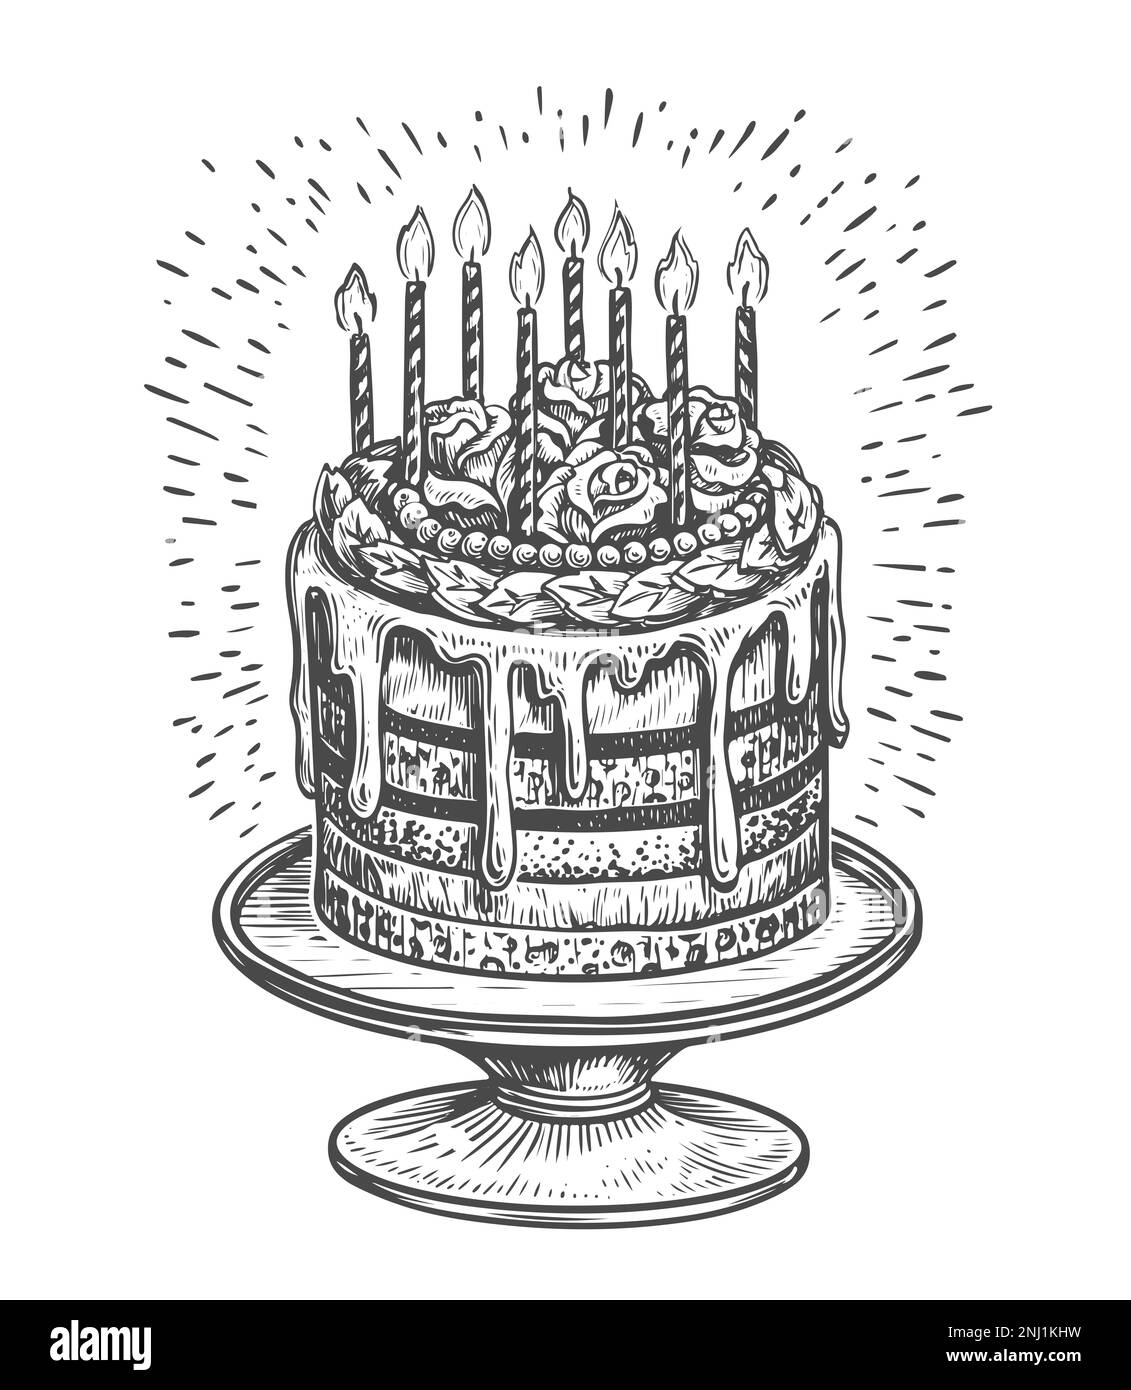 Grande torta dolce con candele bruciate su un piedistallo. Compleanno, concetto di celebrazione. Illustrazione di schizzi vintage Foto Stock